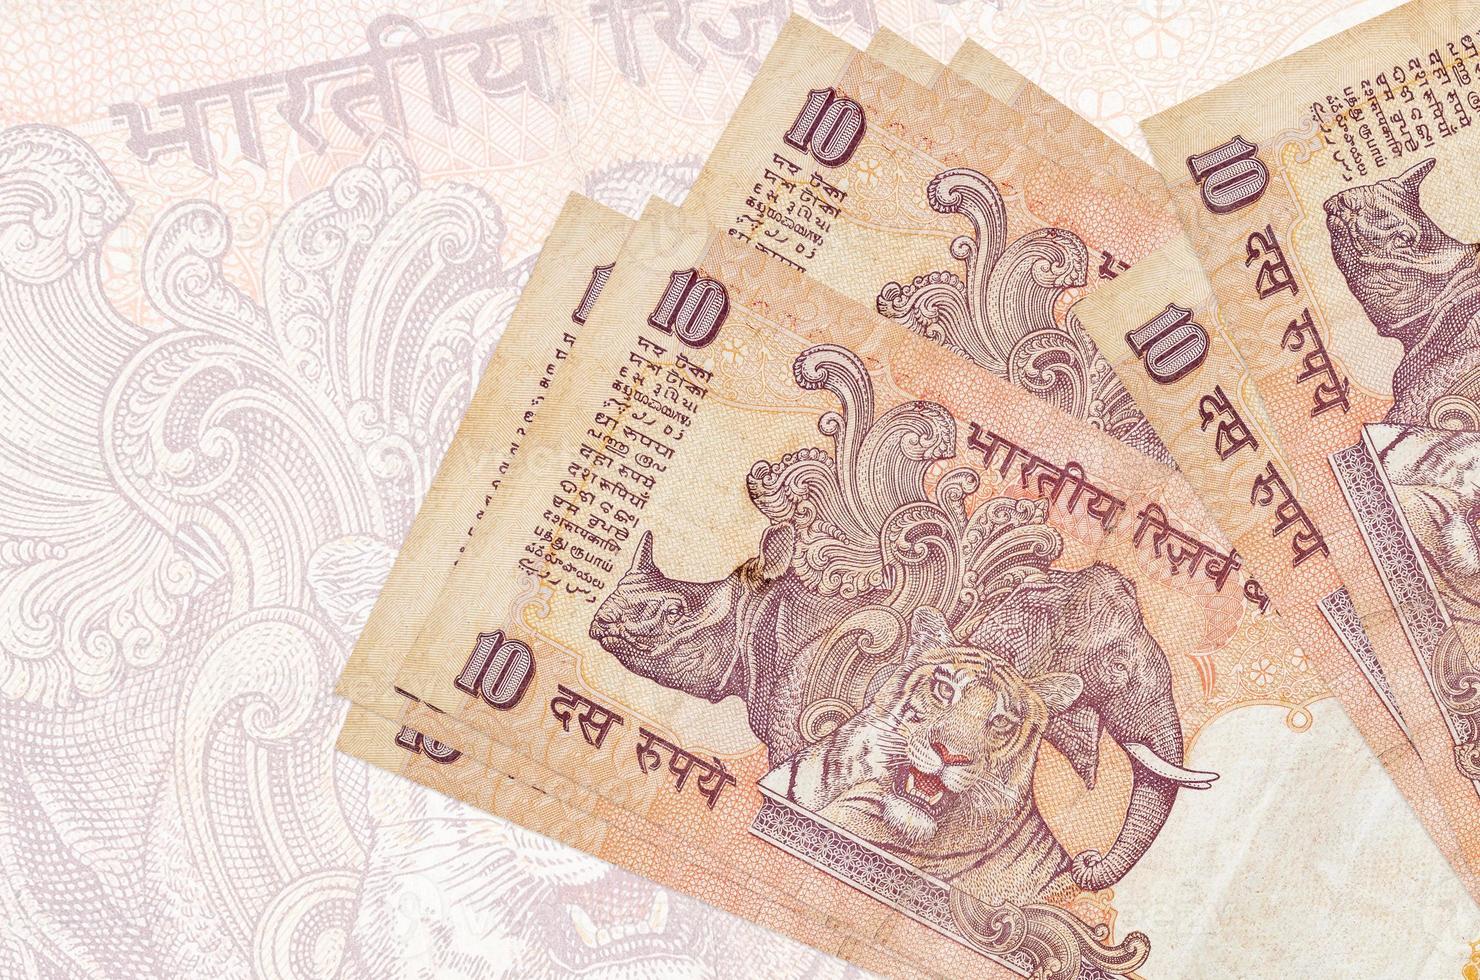 10 billets de roupies indiennes sont empilés sur fond de gros billets semi-transparents. présentation abstraite de la monnaie nationale photo